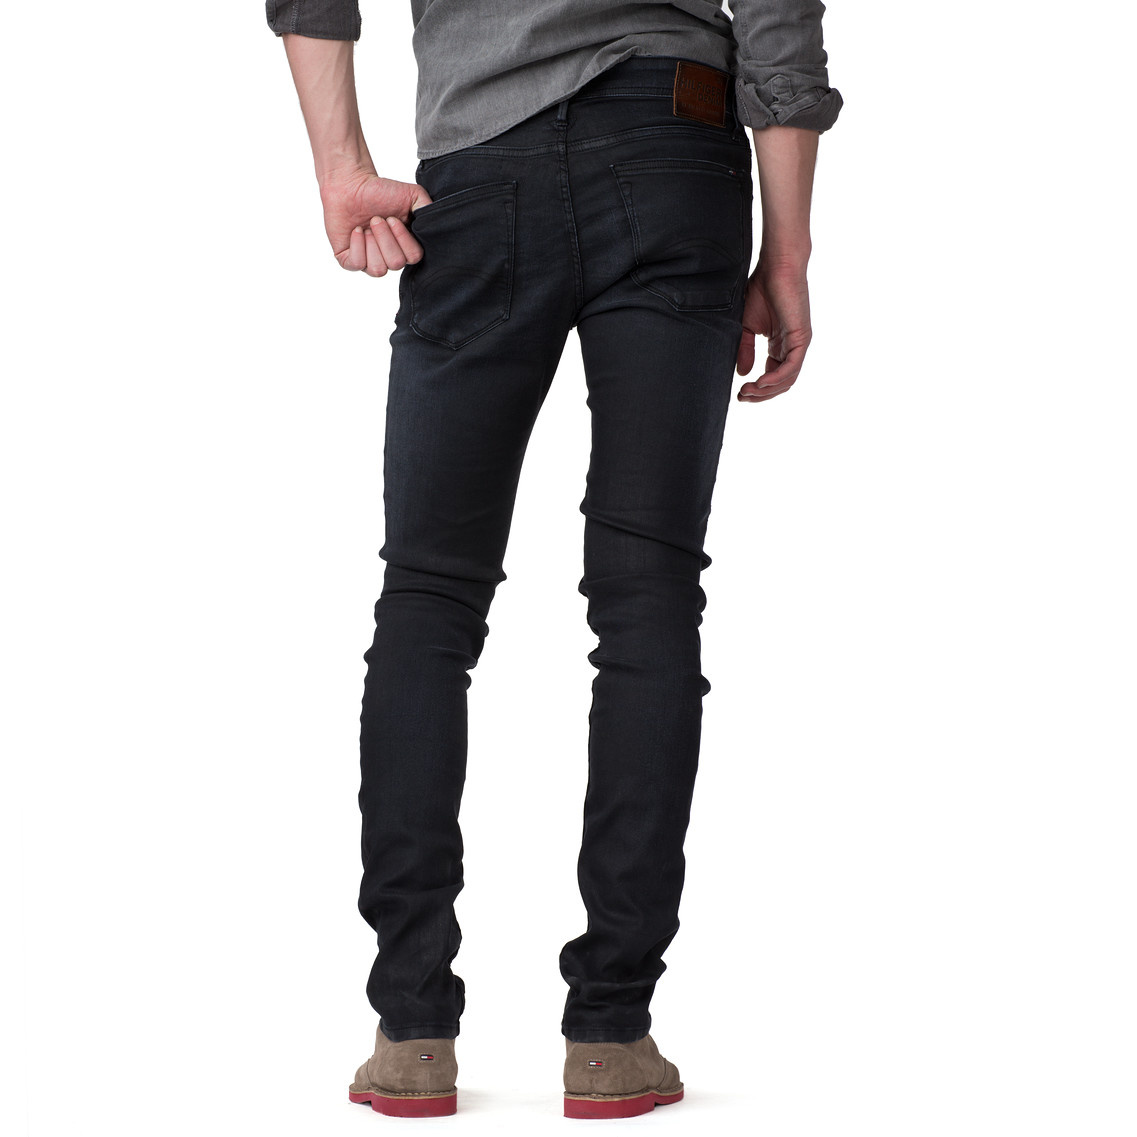 Tommy Hilfiger Sidney Super Skinny Jeans in Black for Men - Lyst